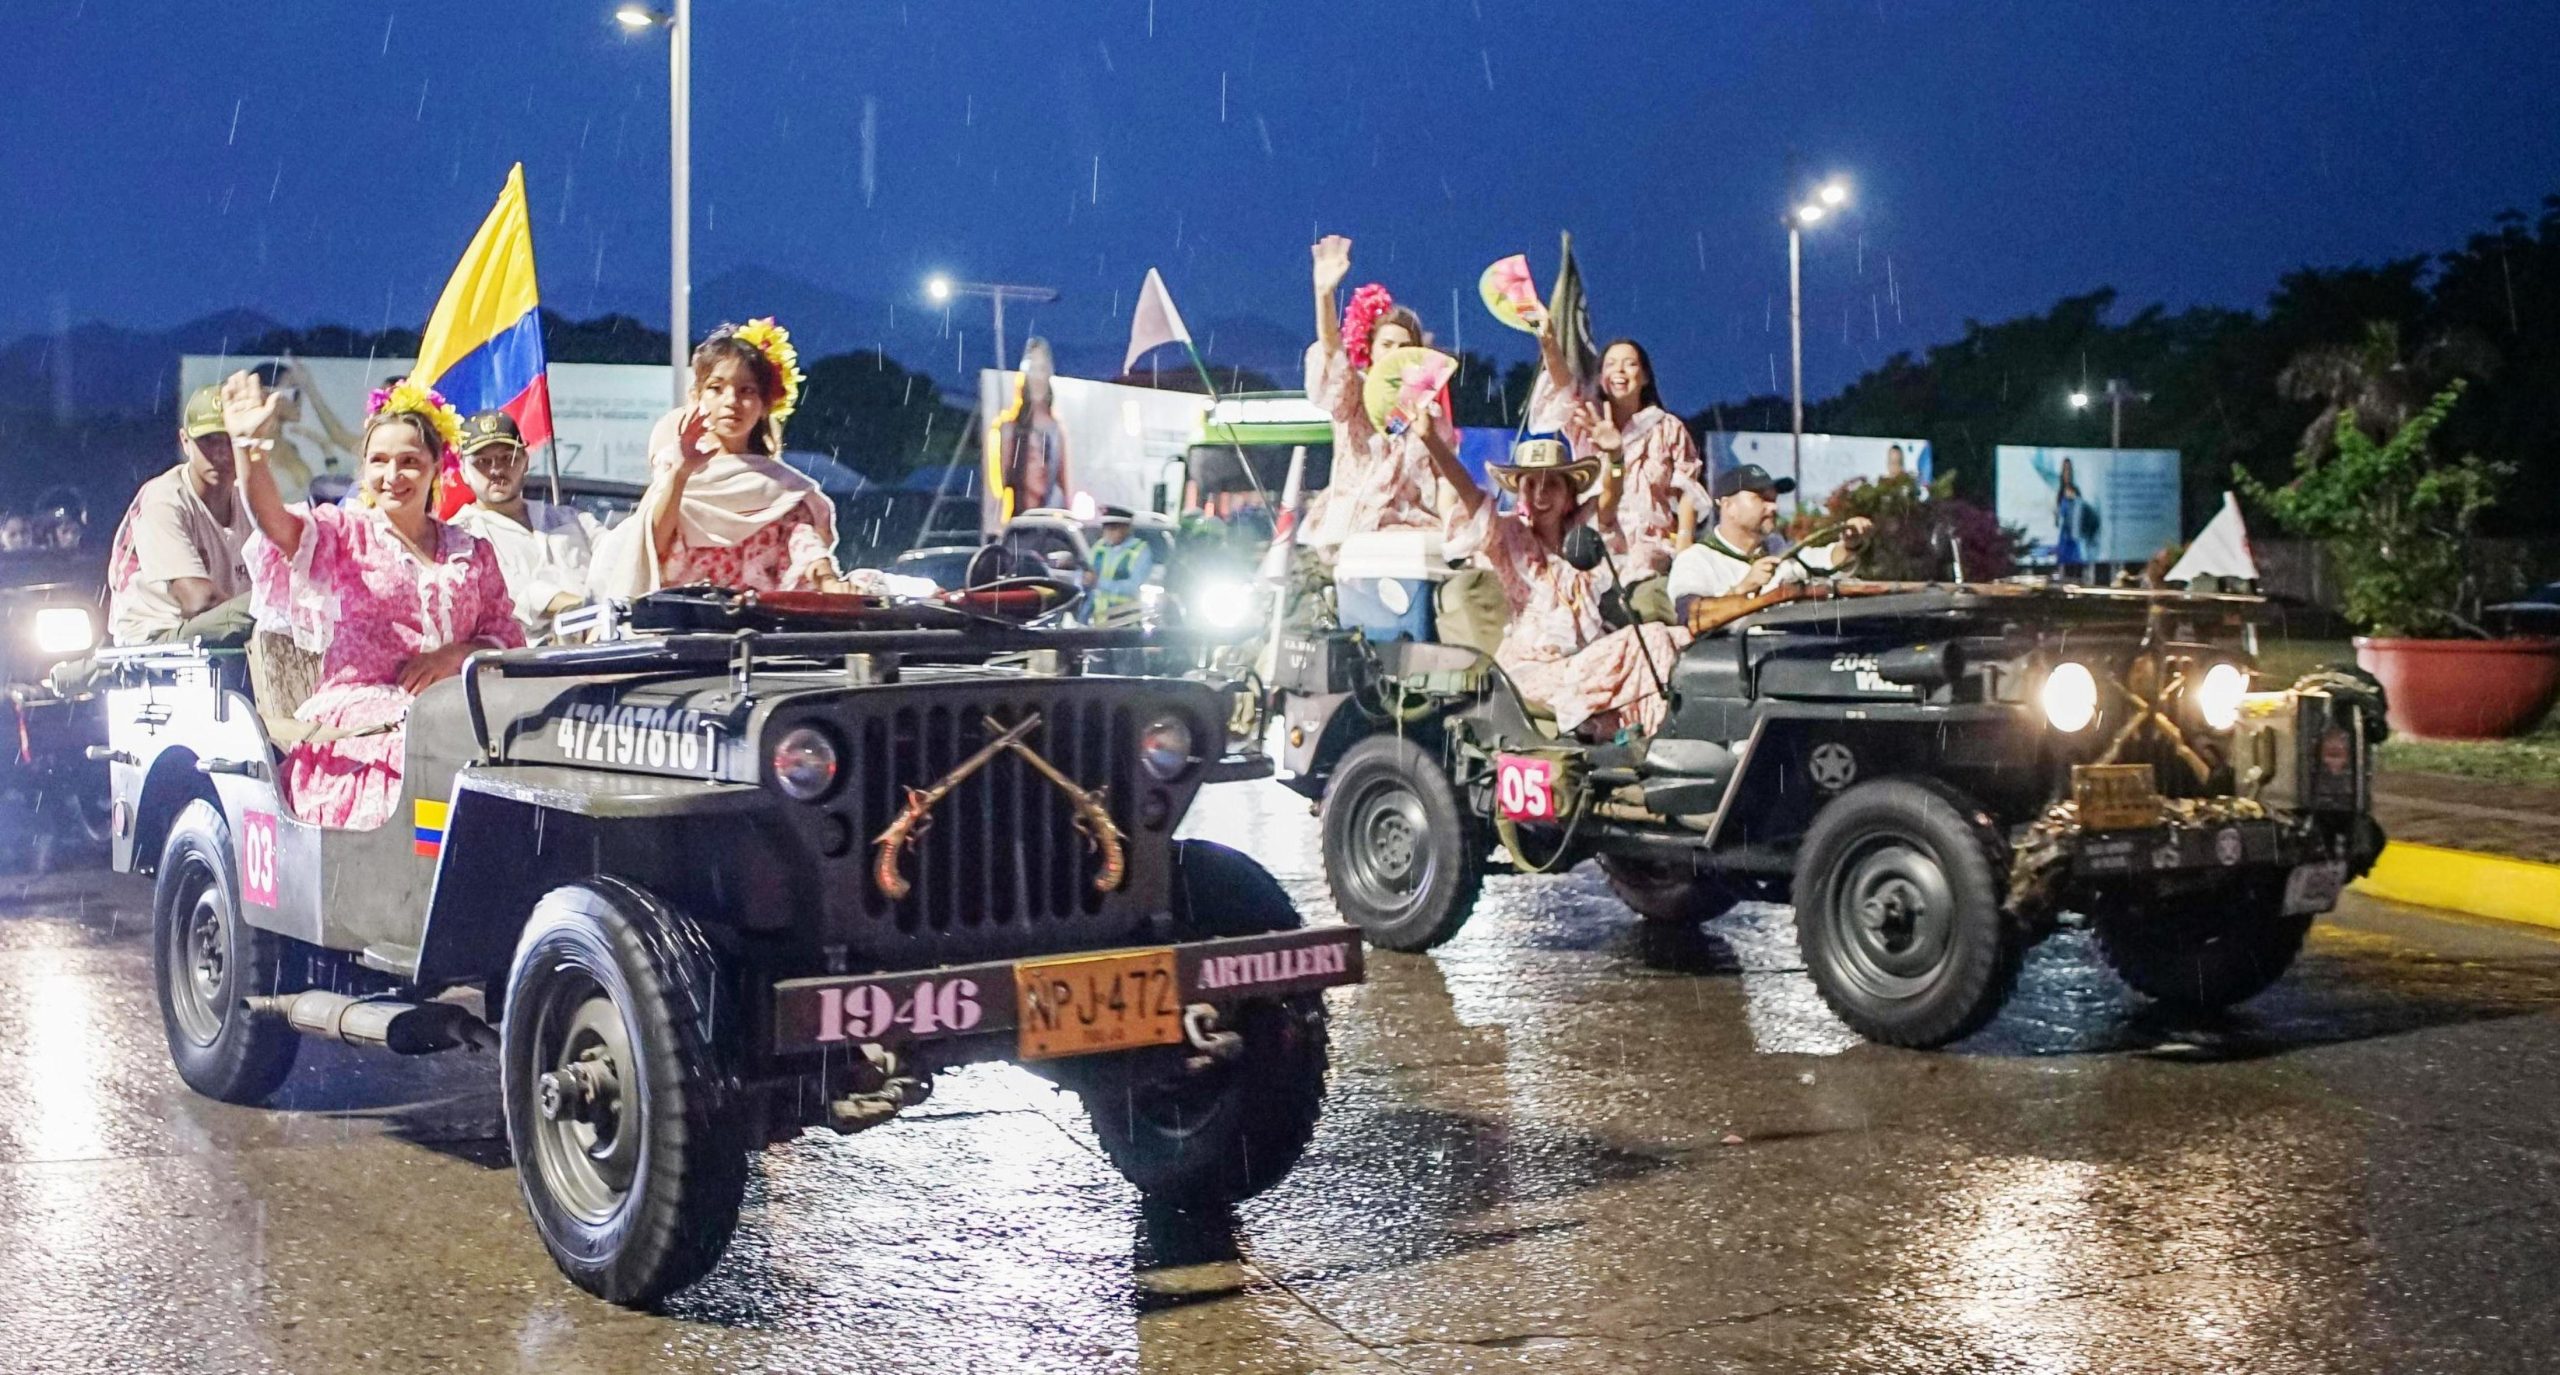 El Desfile de Jeep Willys Parranderos se convirtió en un encuentro rodante lleno de alegría y música